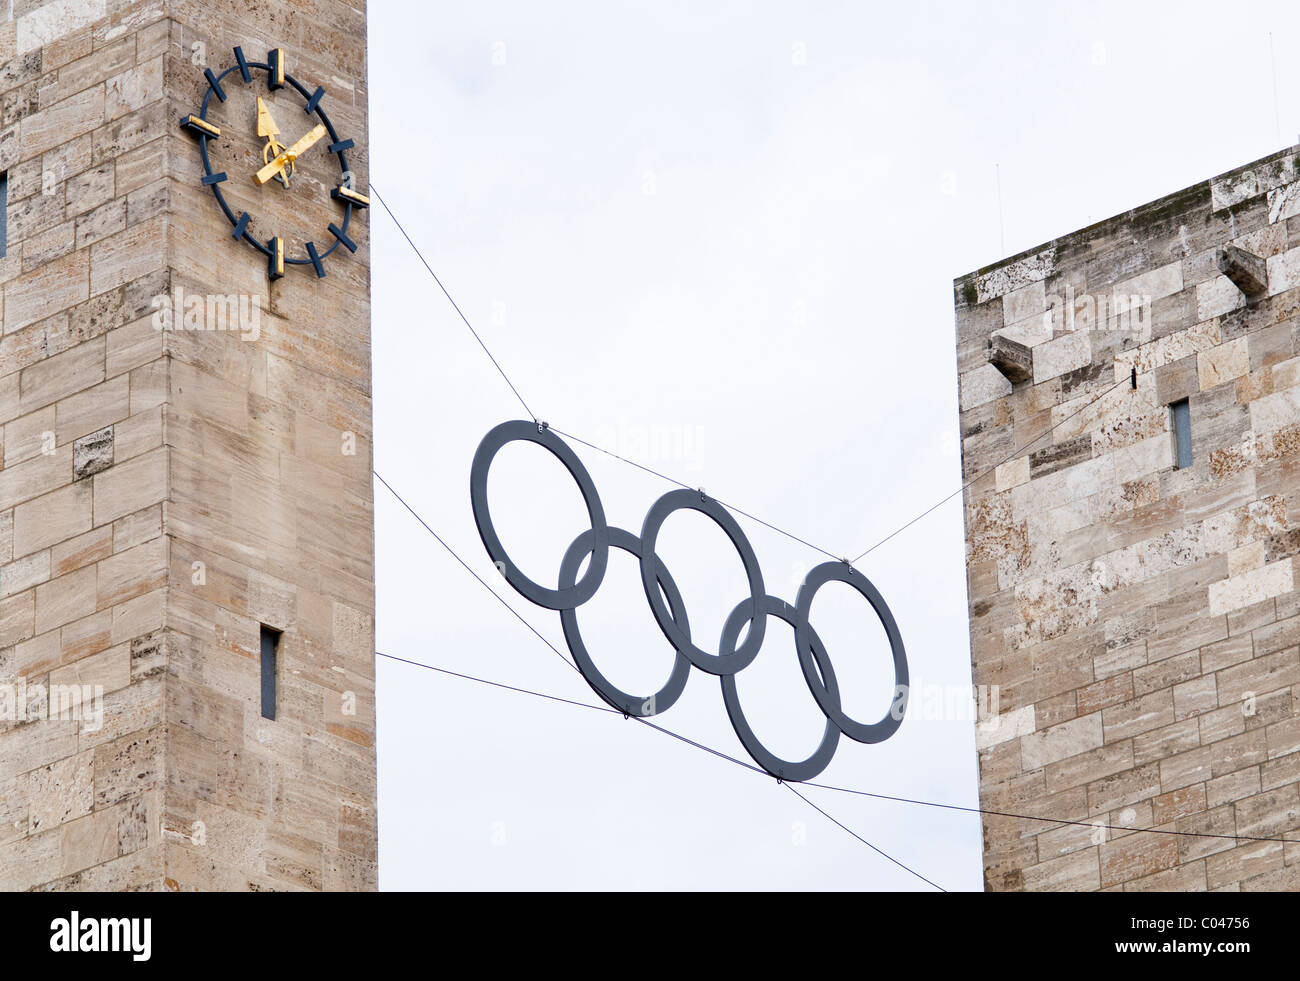 Les anneaux olympiques se suspendre à l'entrée de deux tours à la stade Olympique de Berlin, Berlin où la 11e Jeux olympiques ont eu lieu Banque D'Images